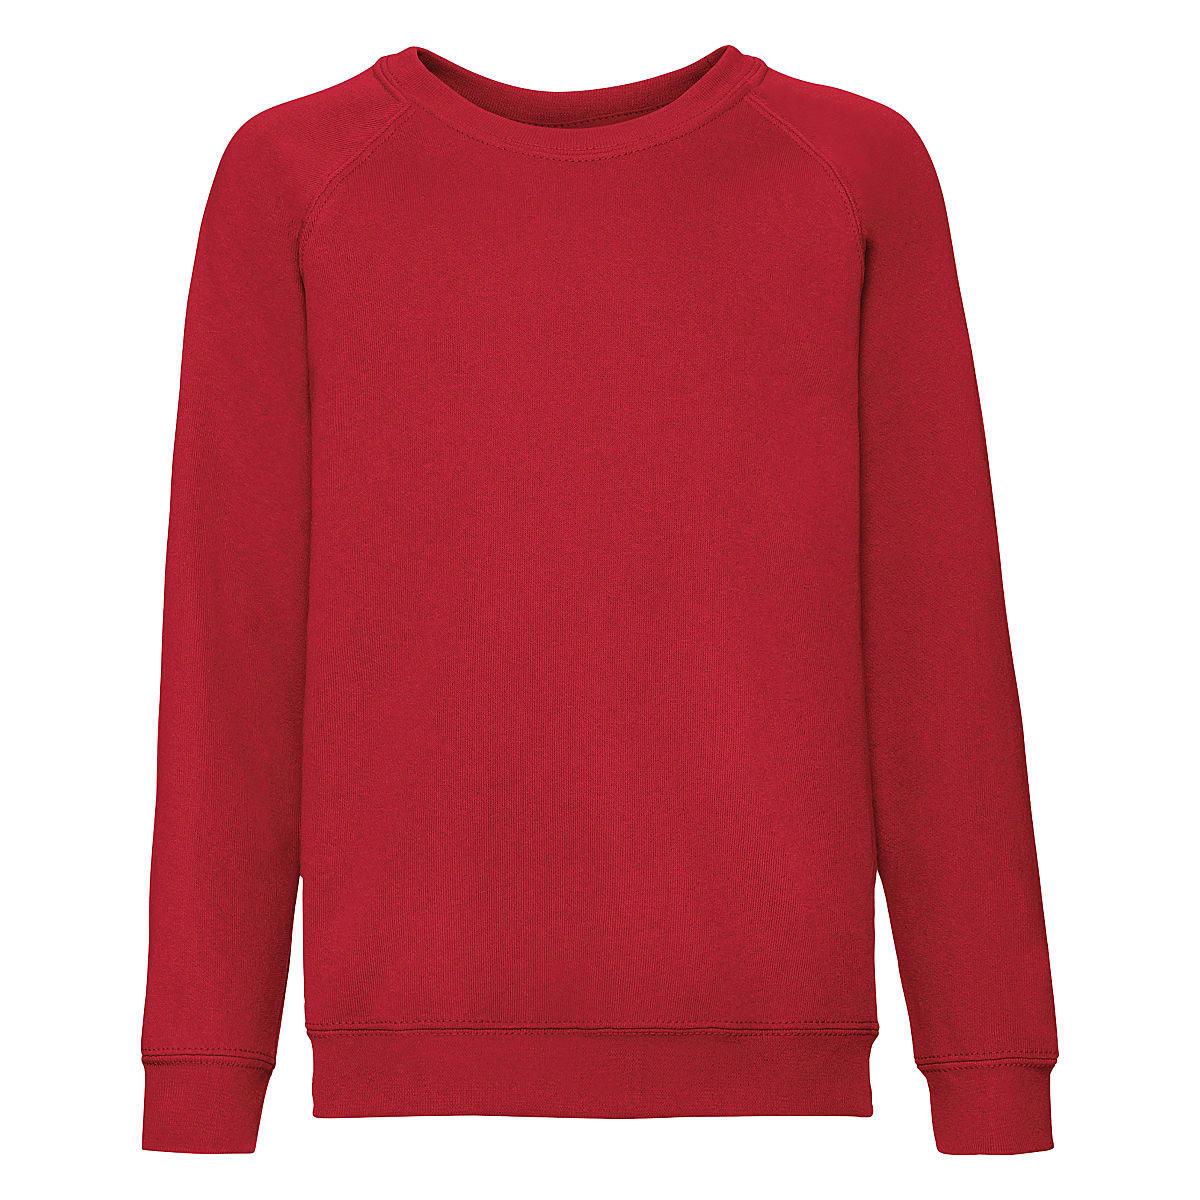 Fruit Of The Loom Childrens Raglan Sleeve Sweatshirt in Red (Product Code: 62039)